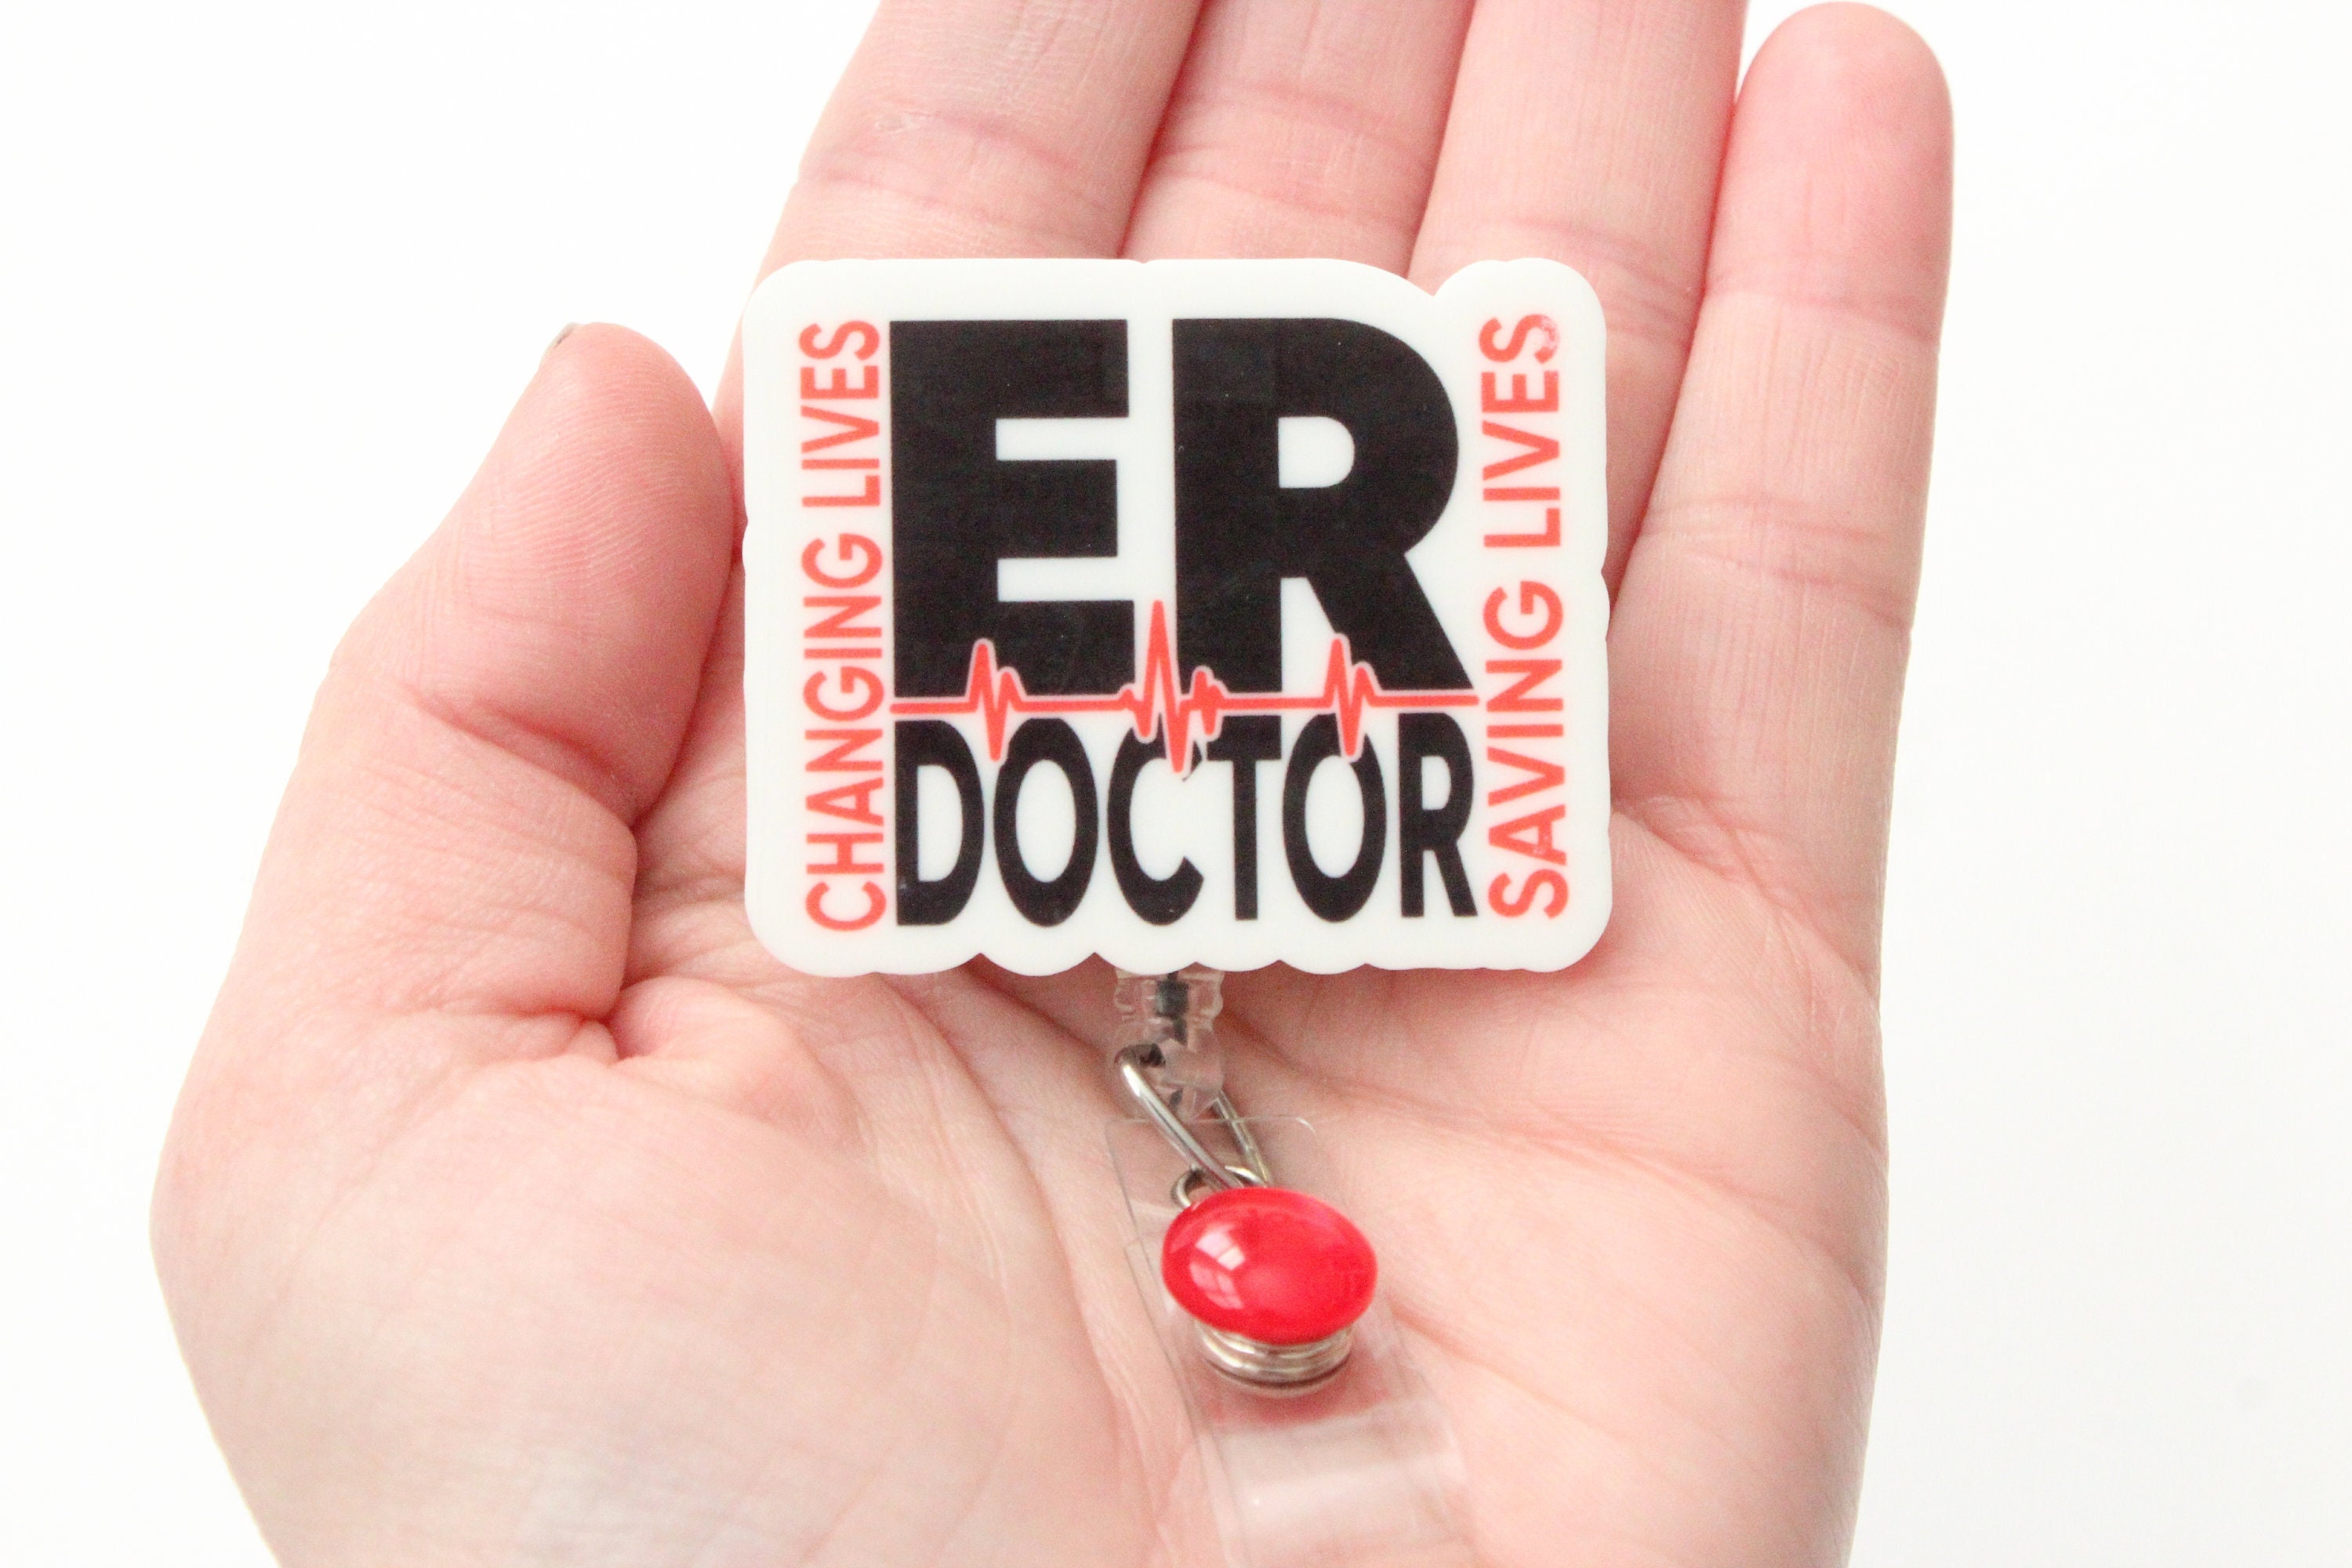 ER Doctor Badge Reel, ER Doctor, Doctor, Physician, Emergency Room Doctor Gift, Physician Gift, Badge Reel